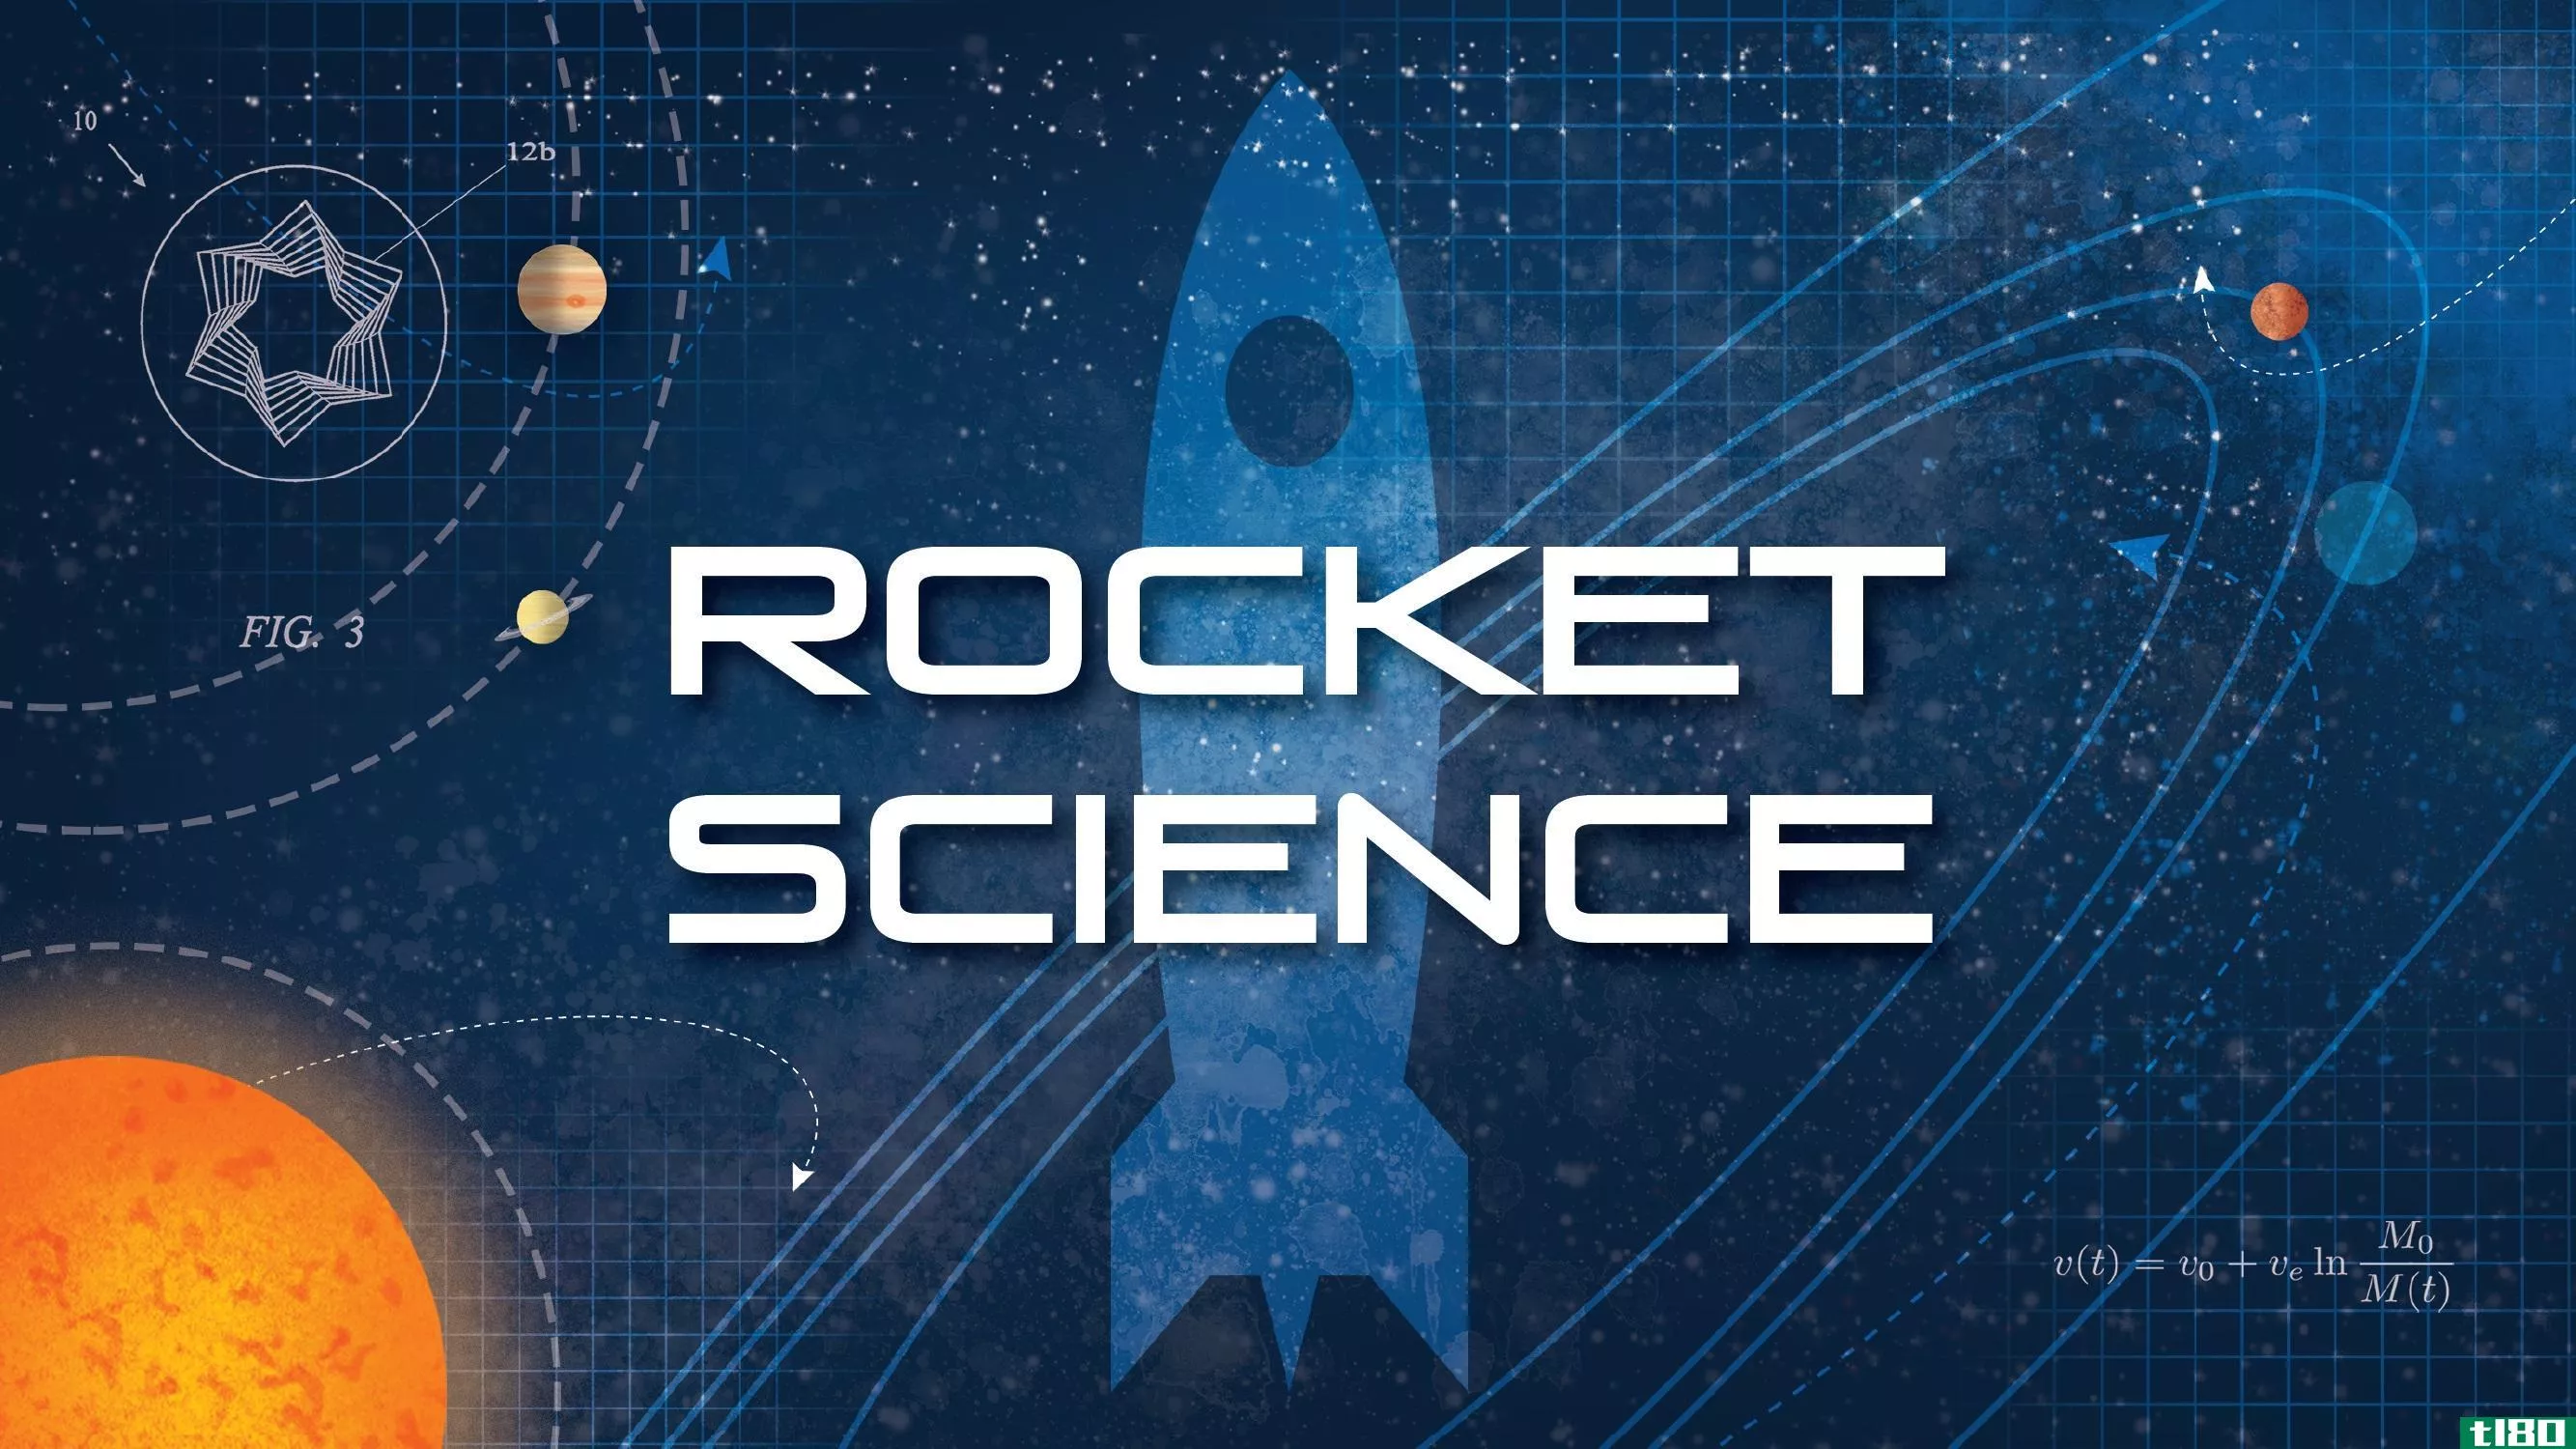 完美的节日礼物：一本教火箭科学的儿童读物